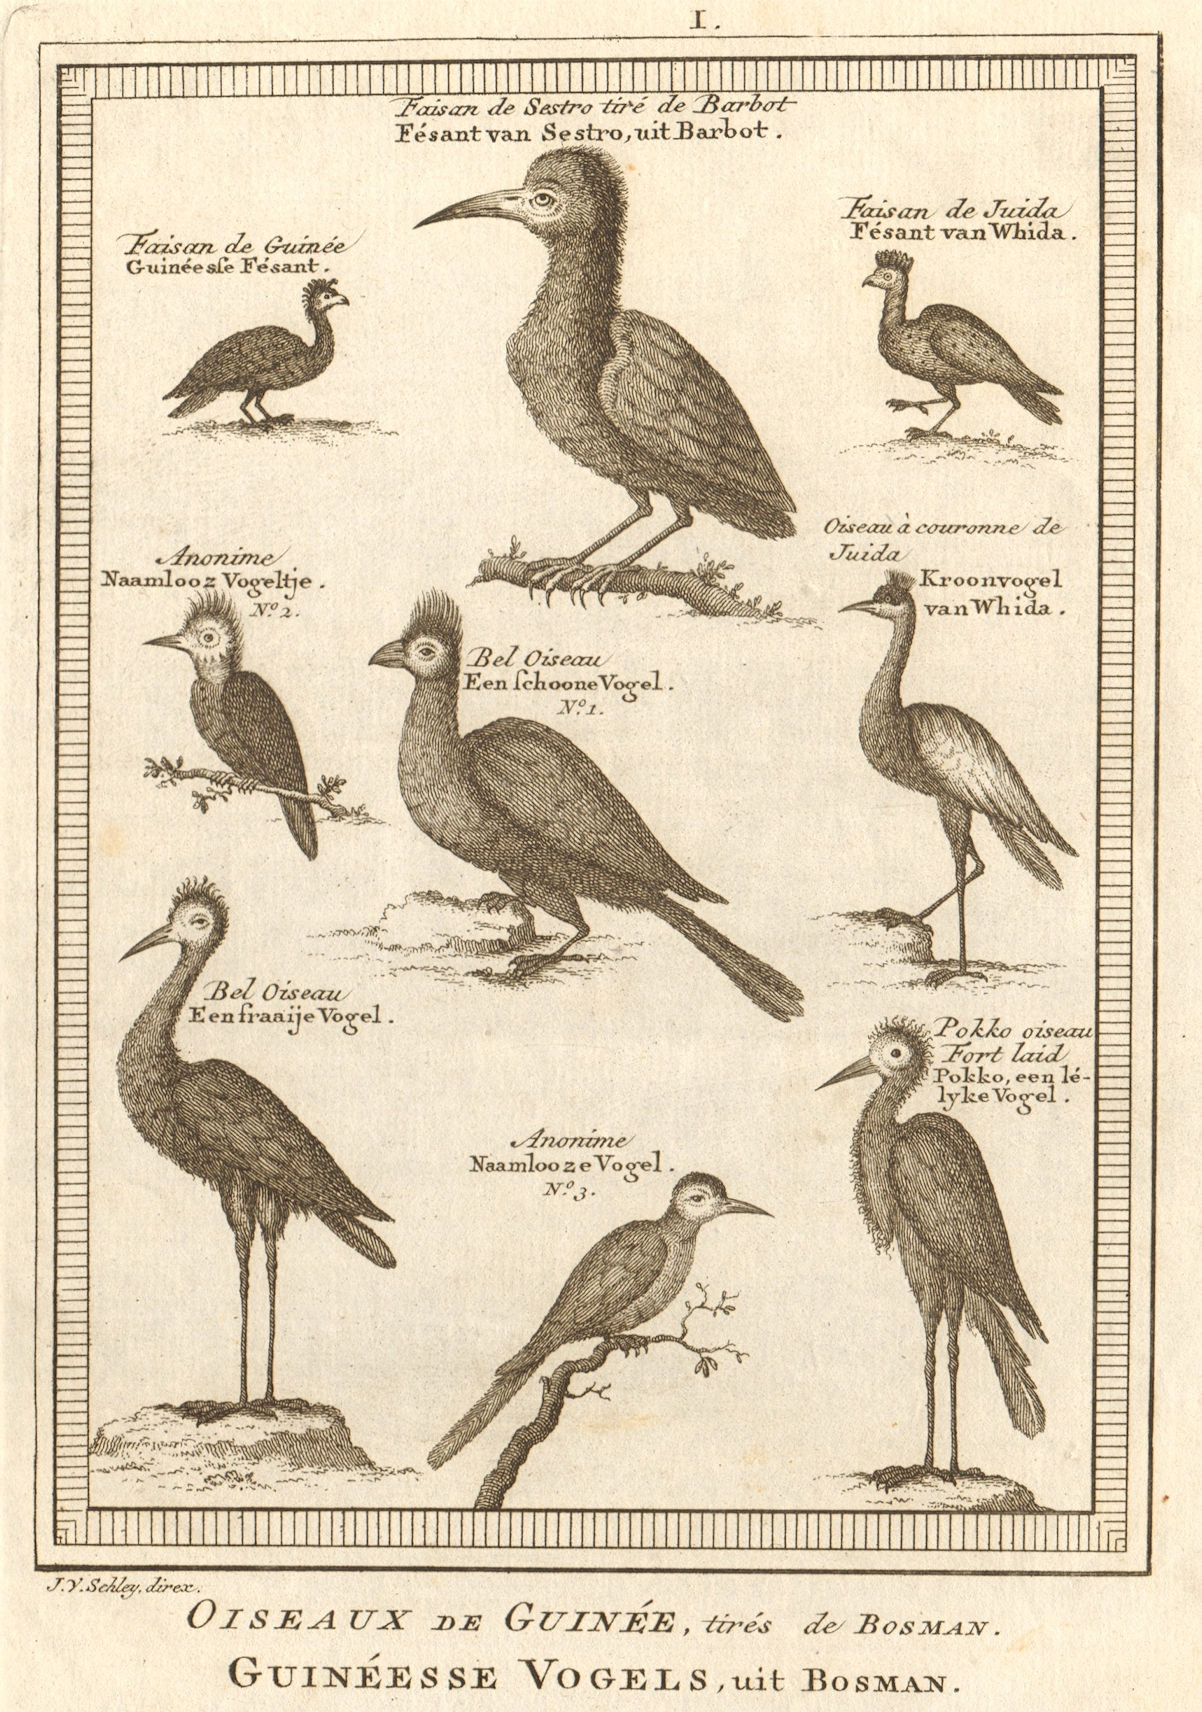 Associate Product Oiseaux de Guinée. West African birds Sestro Ouidah Guinea pheasants SCHLEY 1748